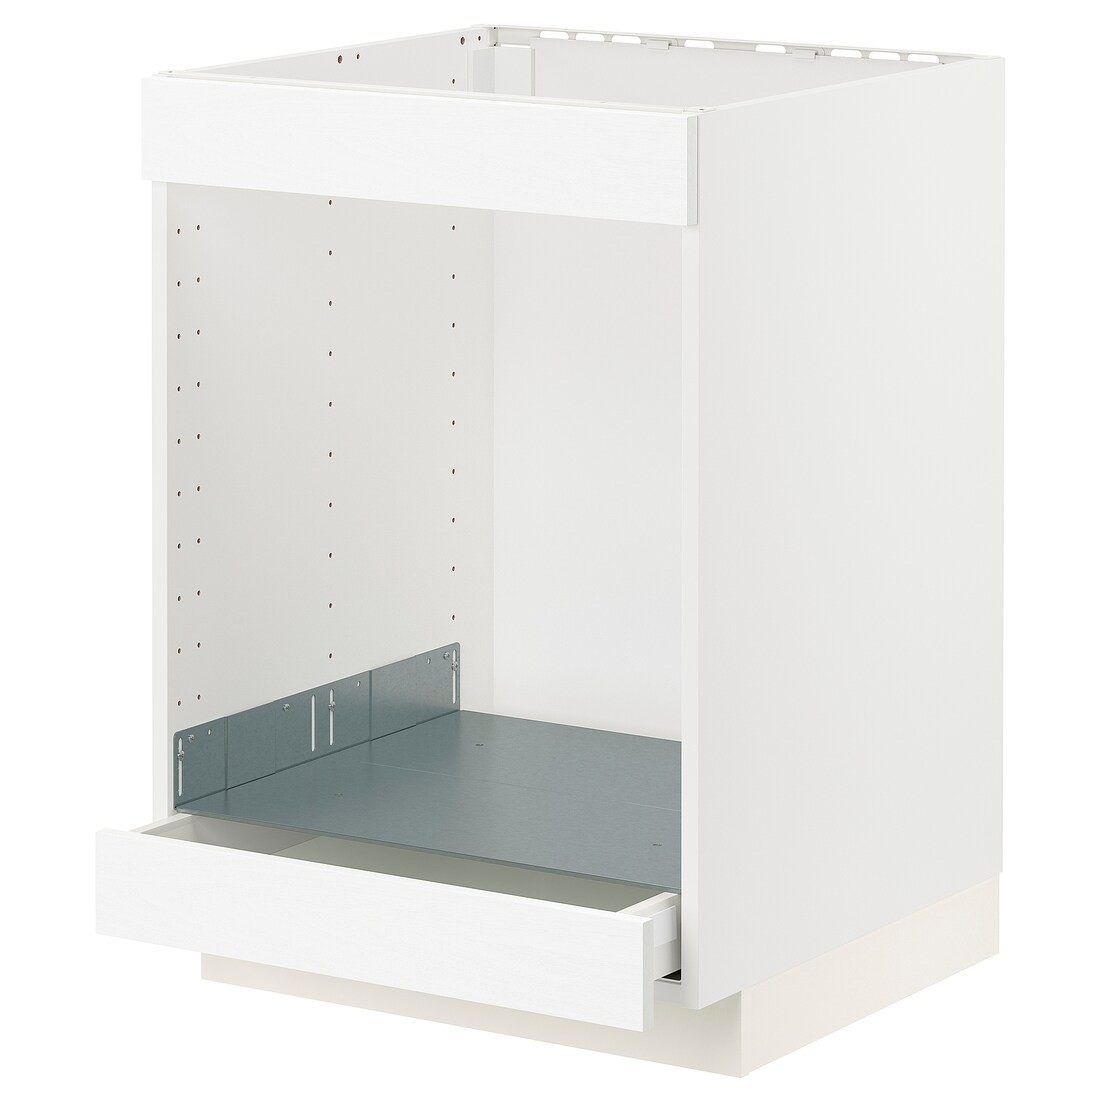 METOD МЕТОД / MAXIMERA МАКСИМЕРА Шкаф под духовку / варочную поверхность / с ящиком, белый Enköping / белый имитация дерева, 60x60 см